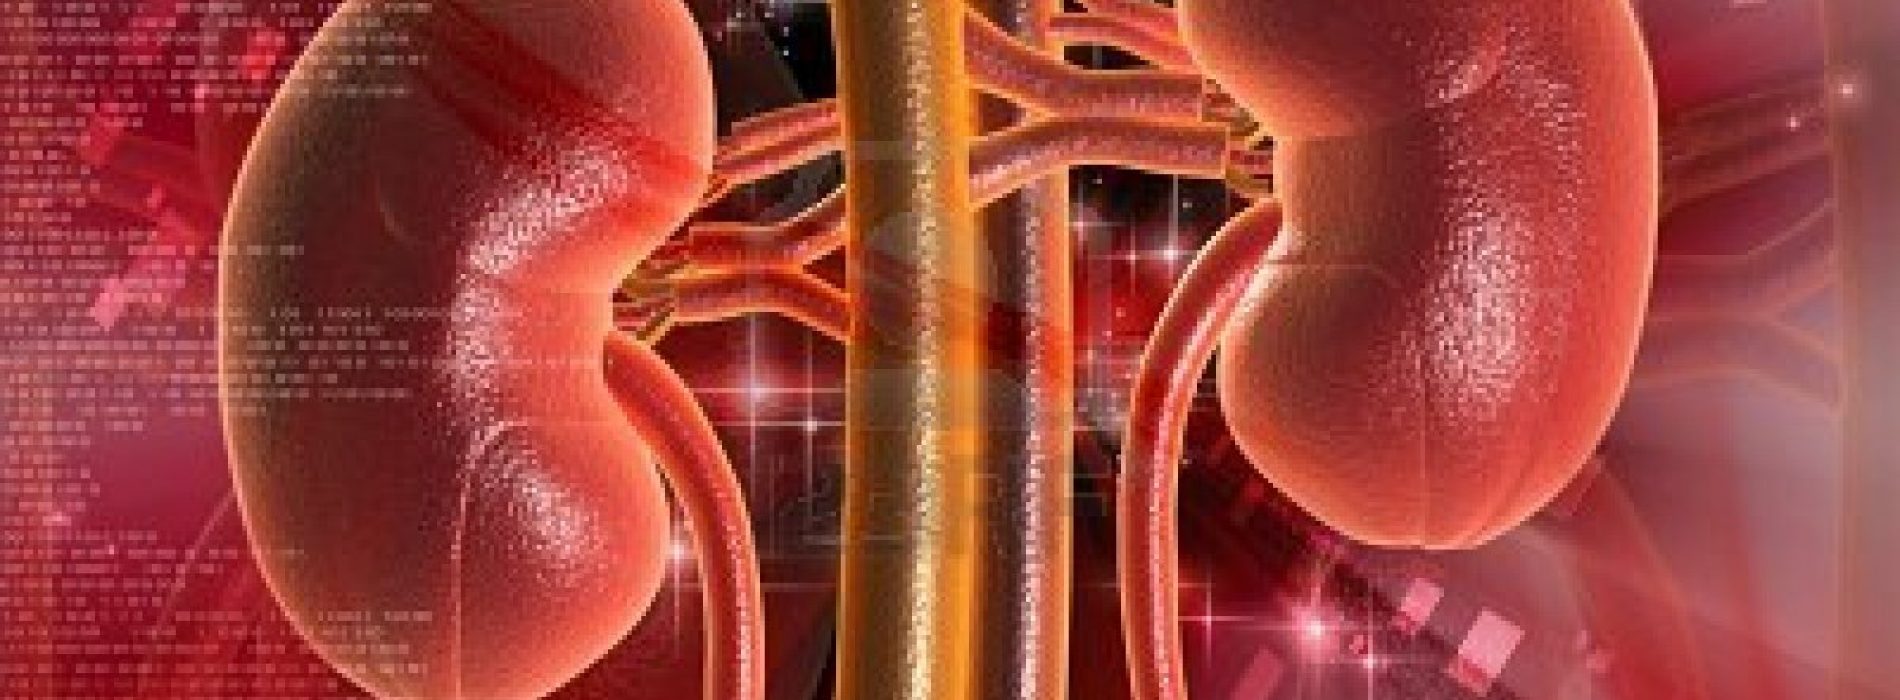 Hoe gezond zijn uw nieren? Doe de gratis niertest